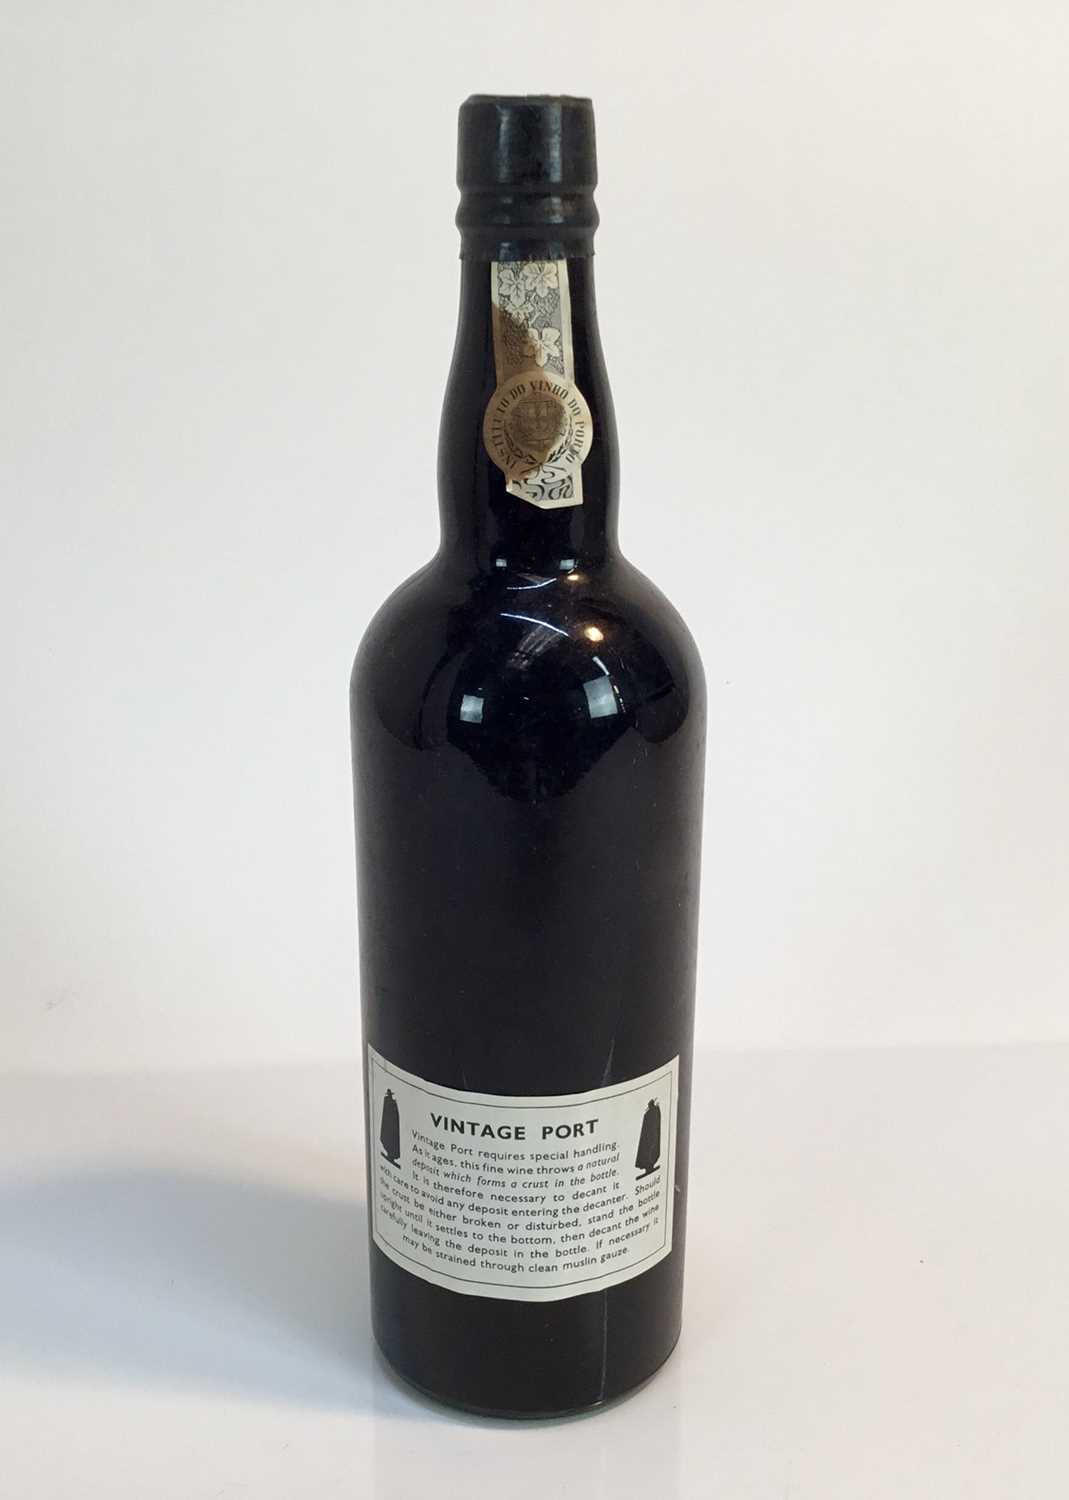 Port - one bottle, Sandeman 1977 - Image 2 of 3